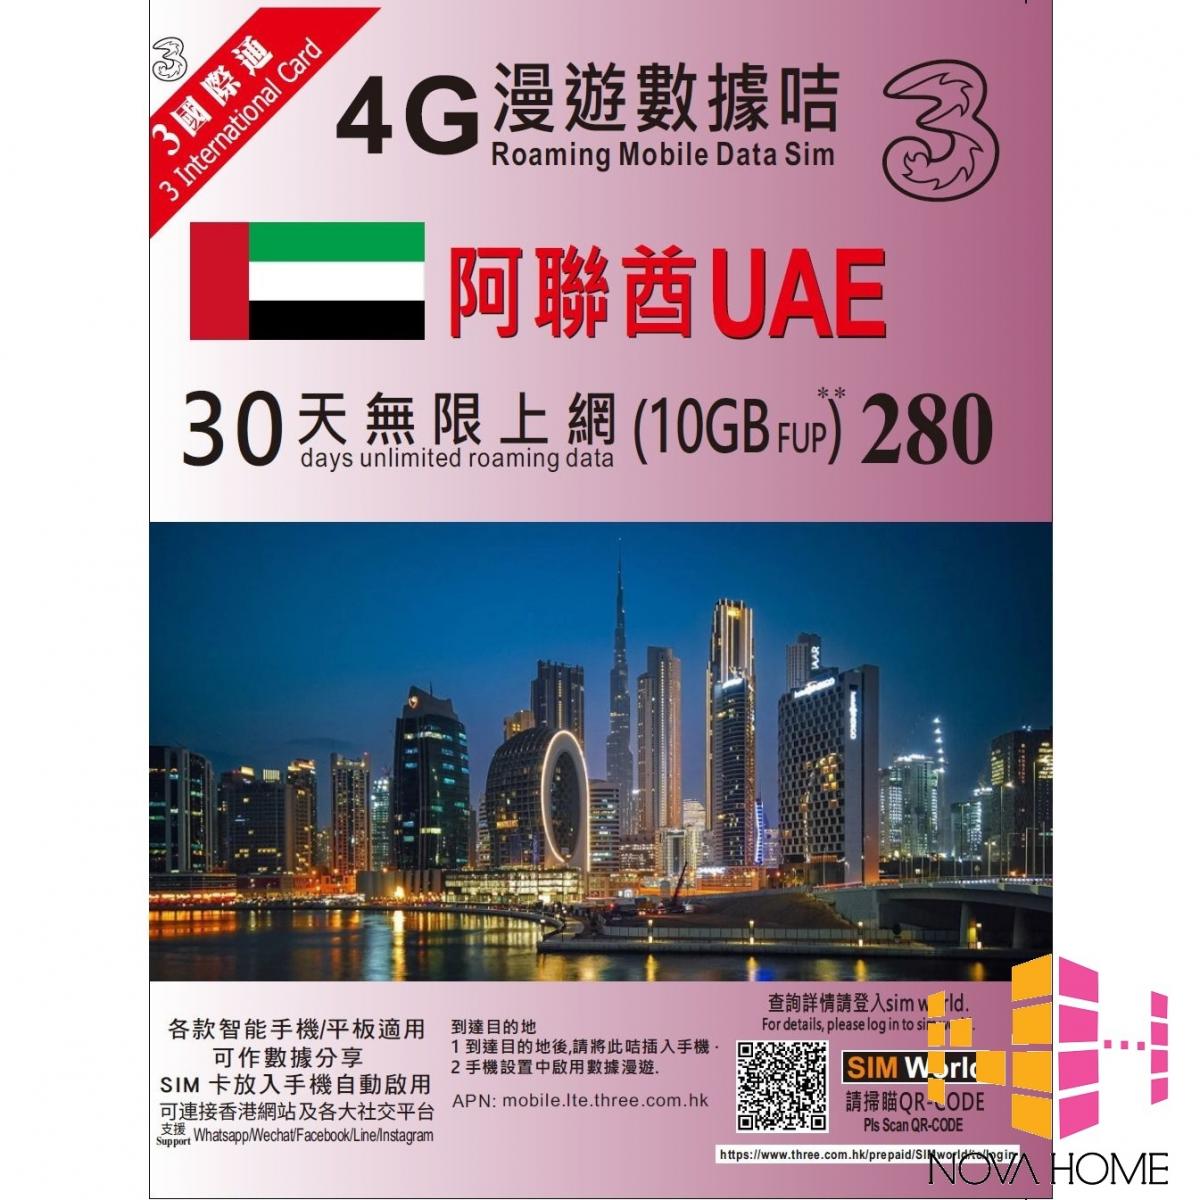 3HK UAE 30 Days 4G LTE Unlimited Data SIM Card (10GB FUP)